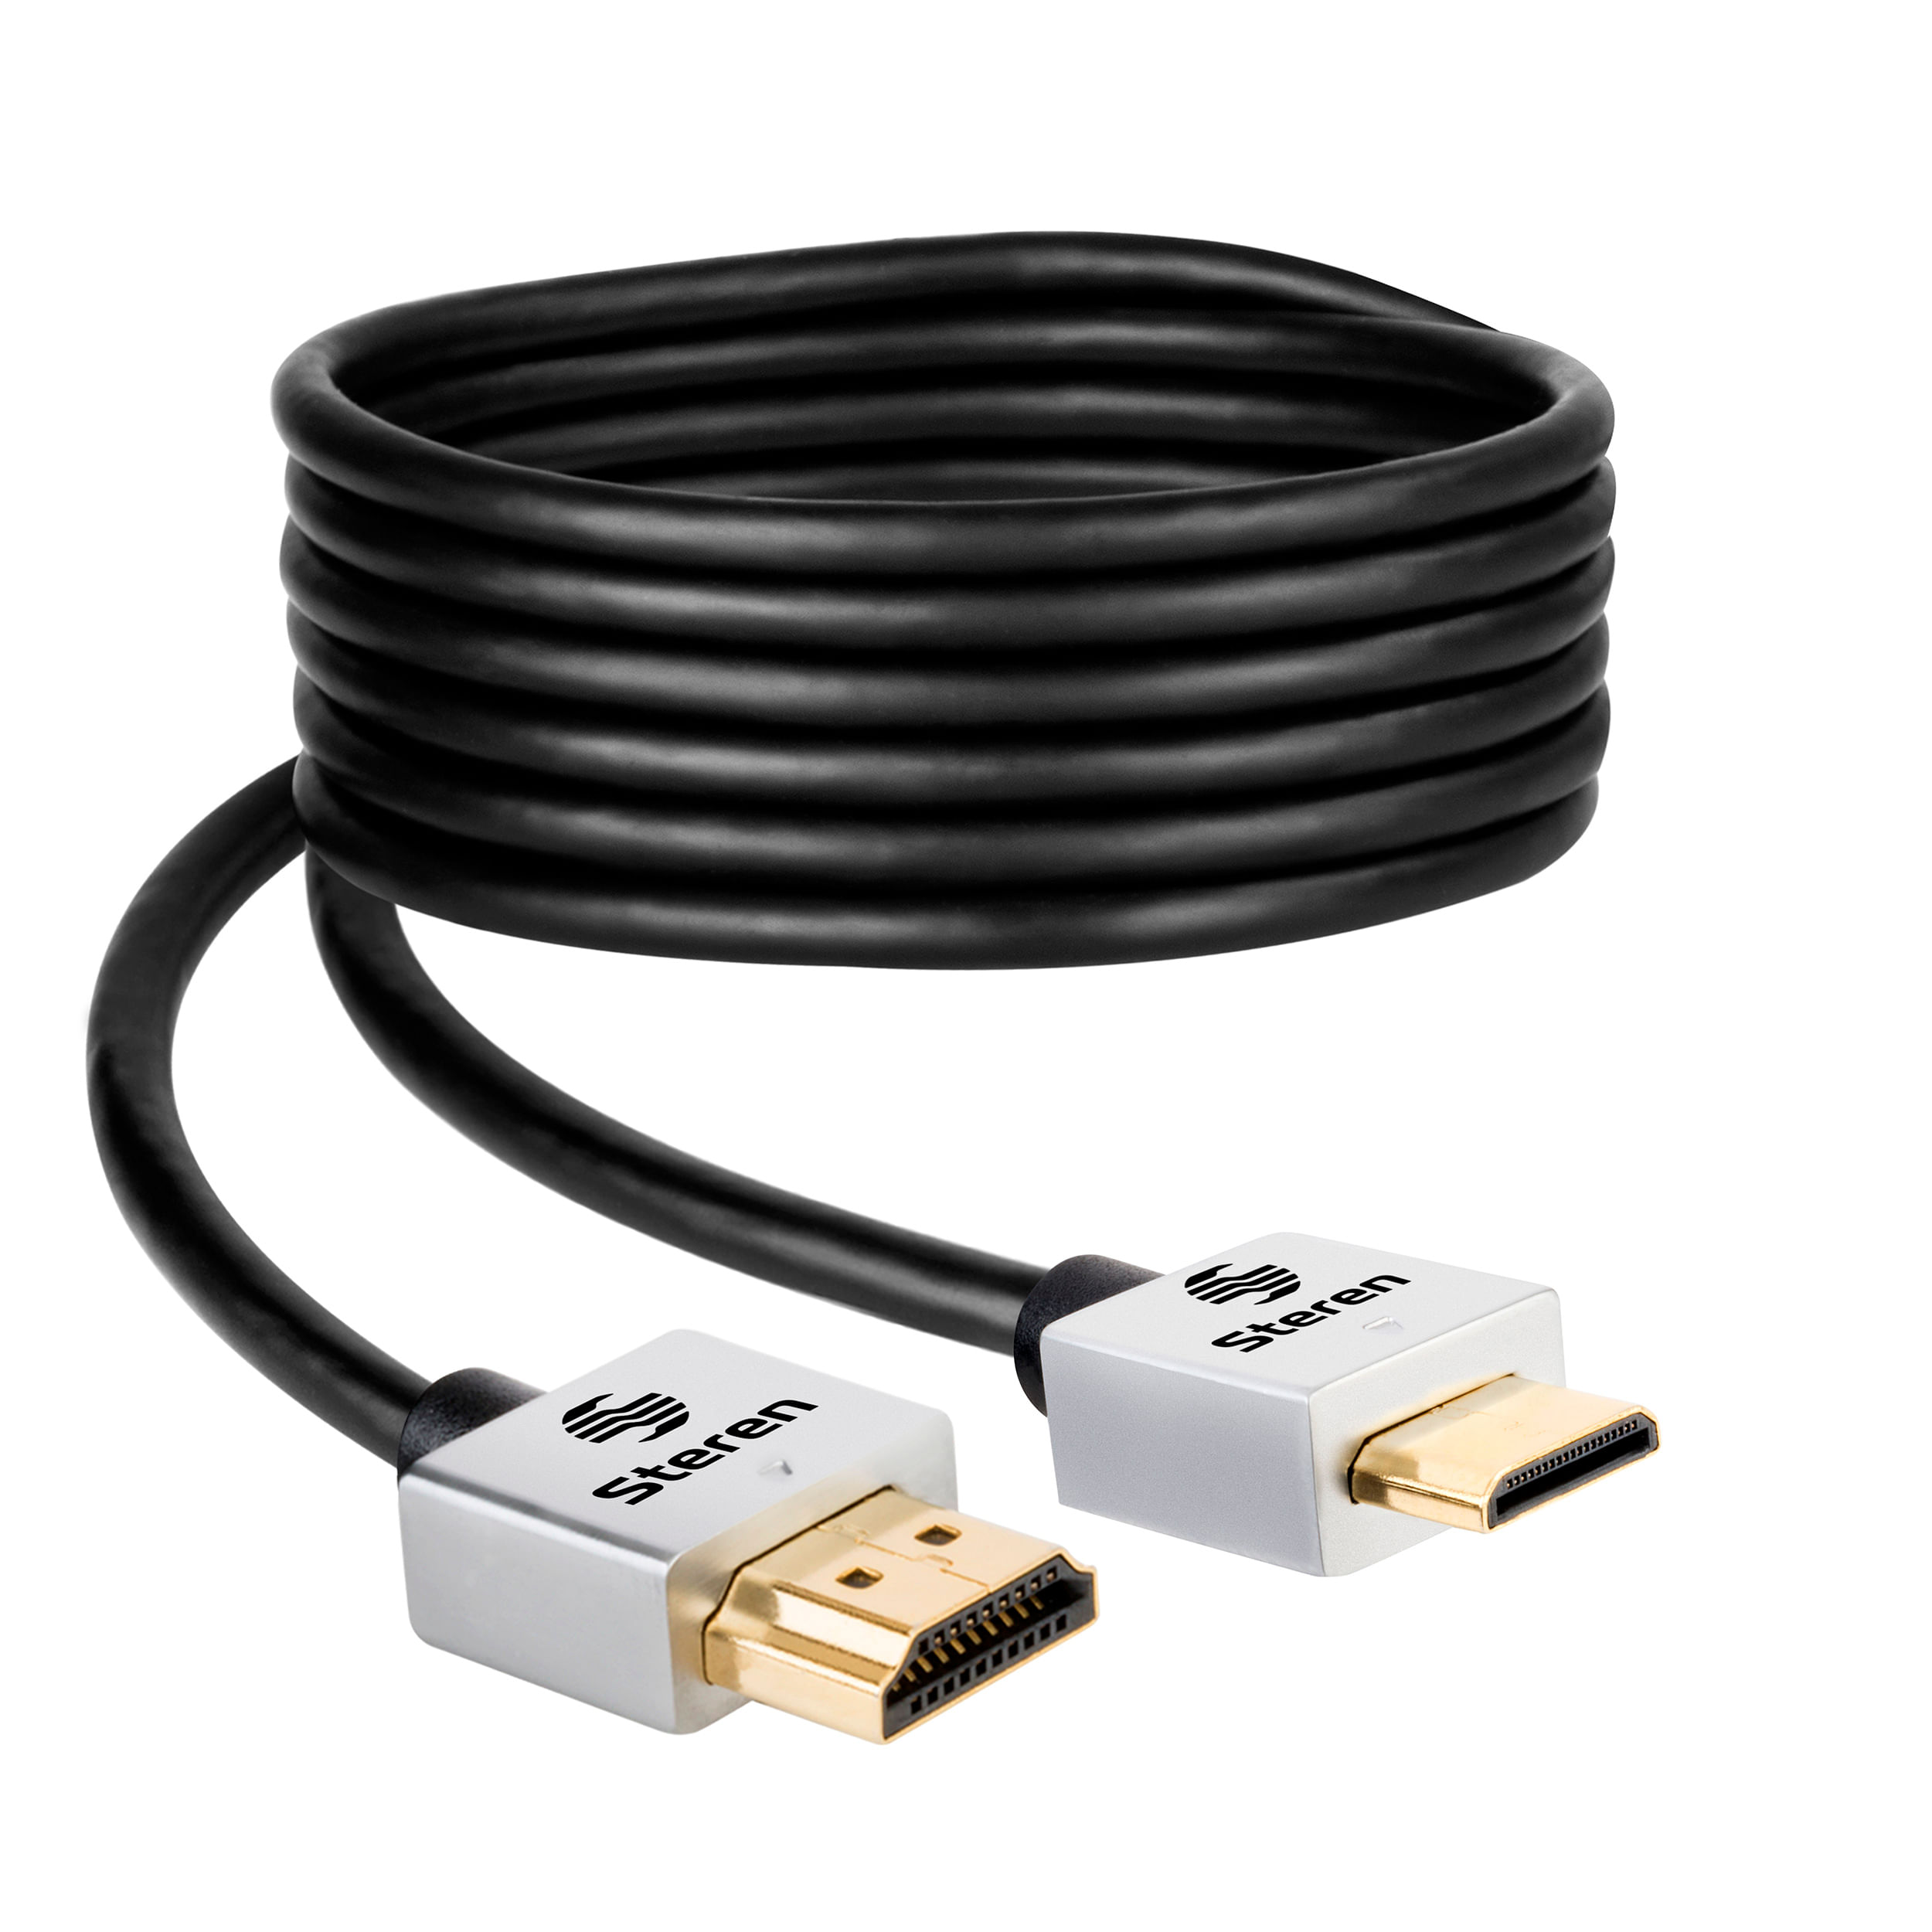 CABLE HDMI A MINI HDMI 2M, Sin Marca en Colombia desde $13.673